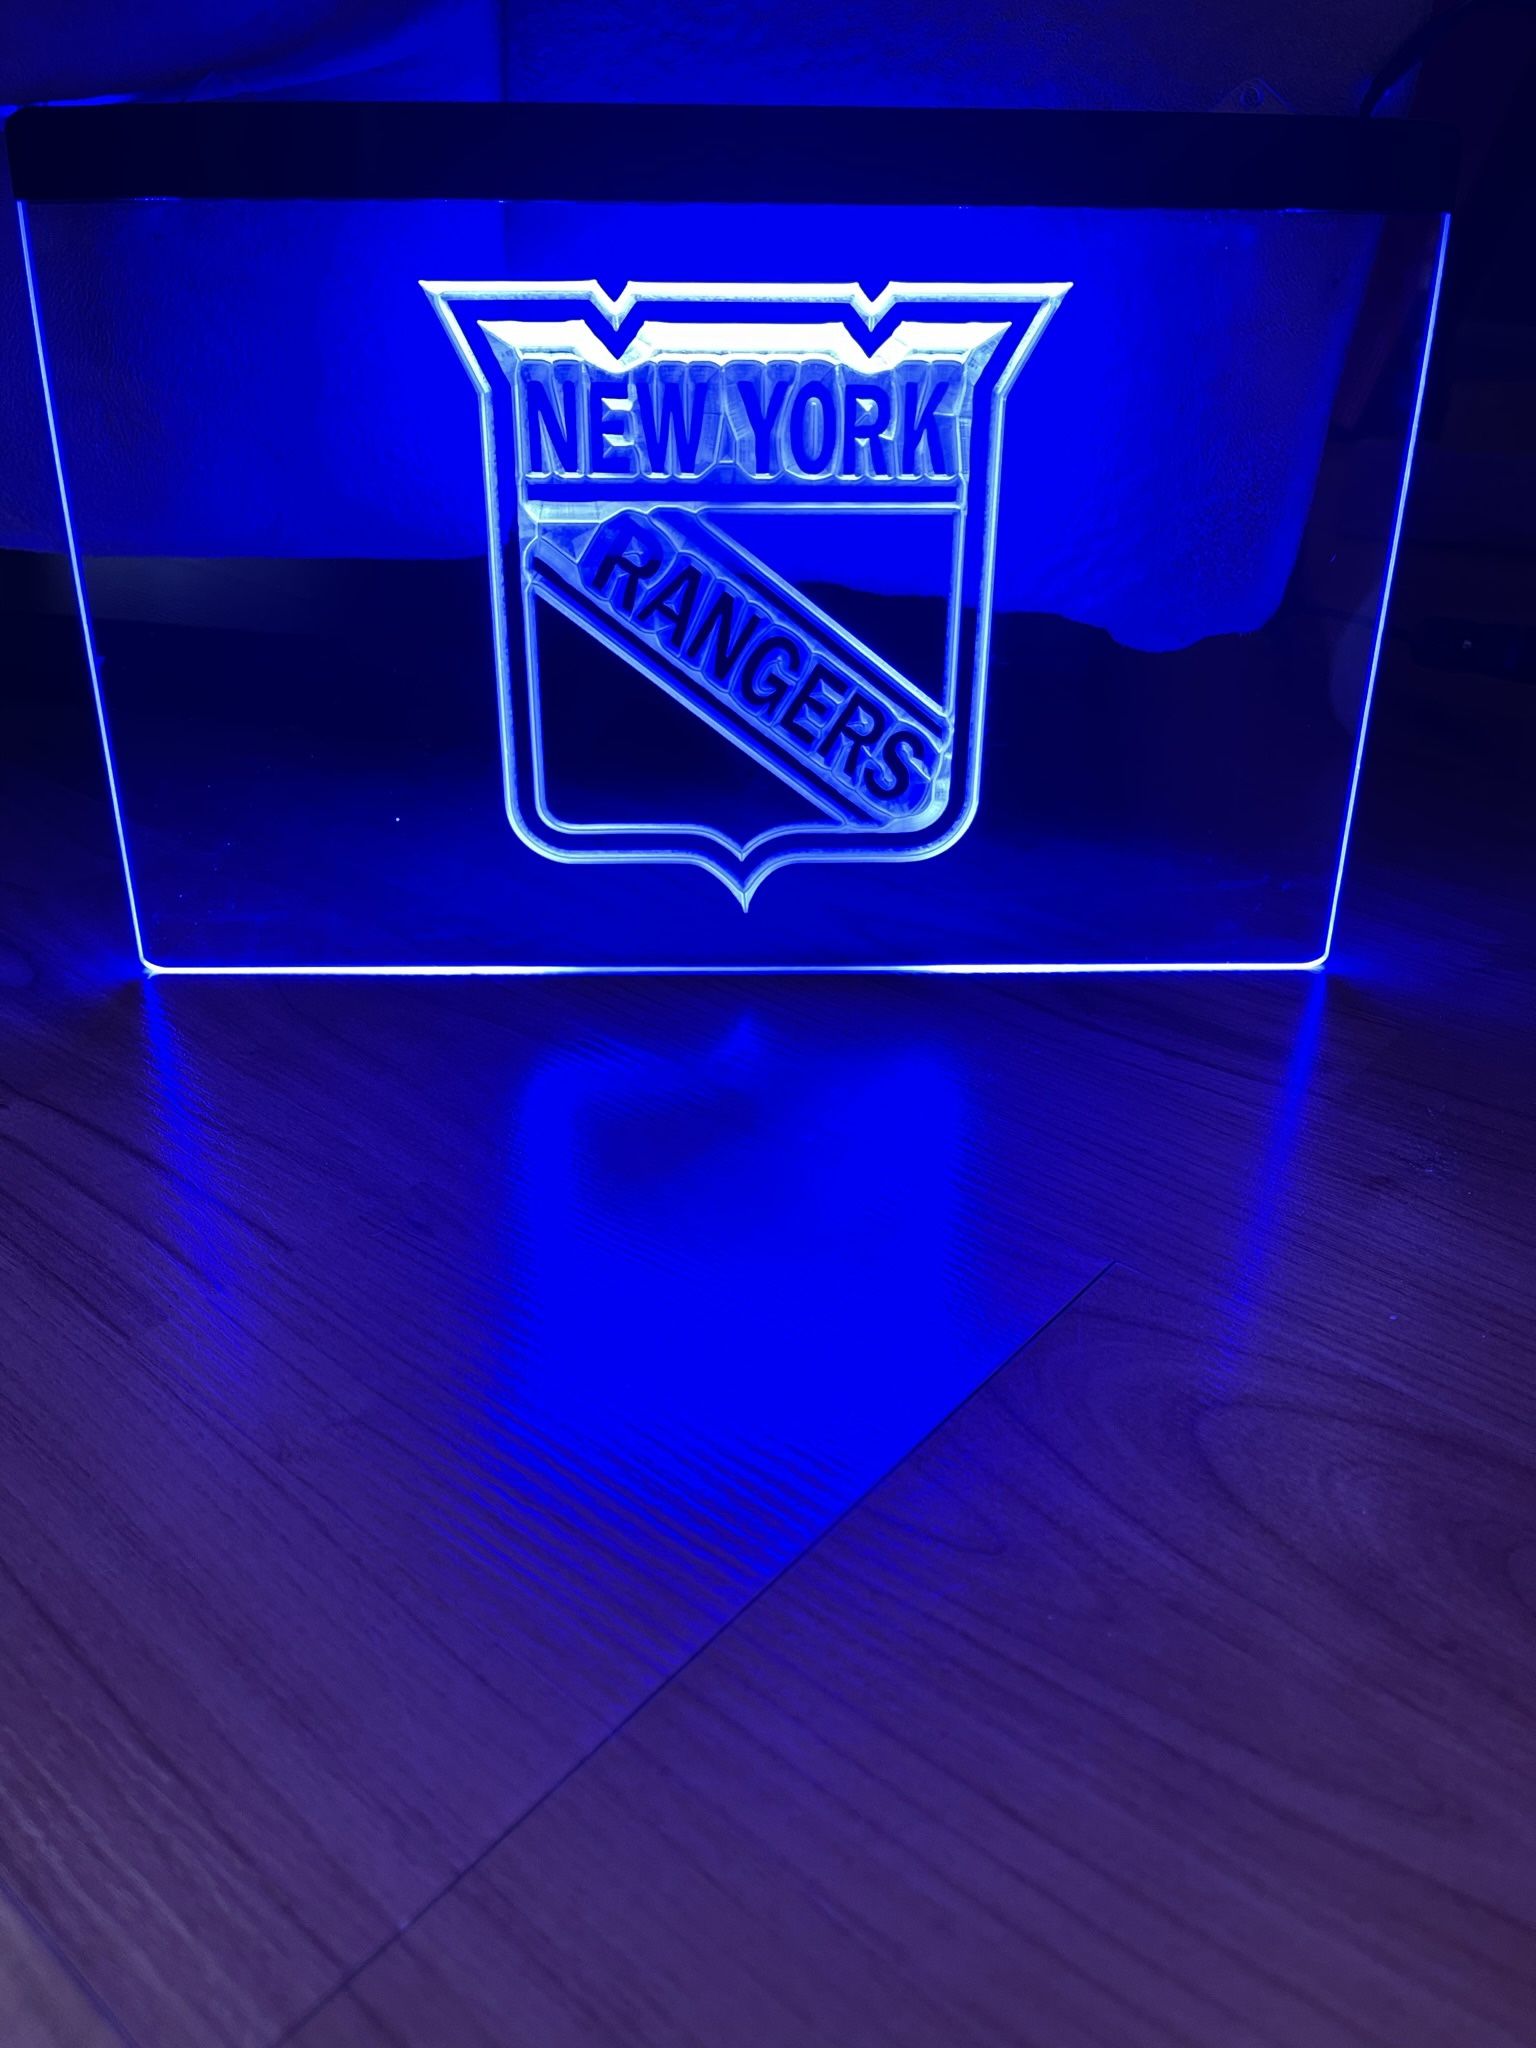 NEW YORK RANGERS LED NEON BLUE LIGHT SIGN 8x12